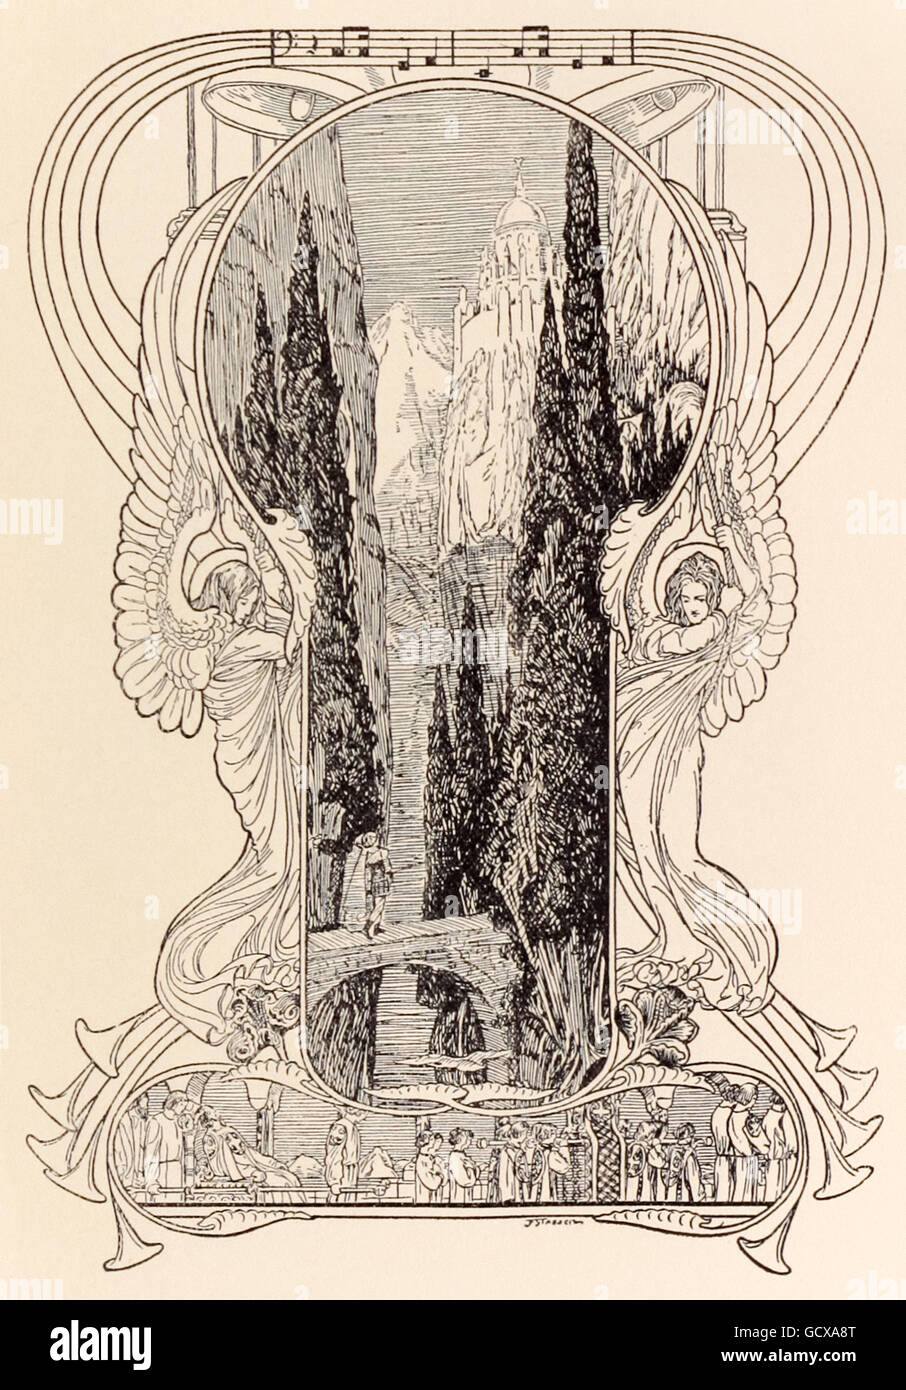 "Monsalvat, le château du Graal." Franz Stassen (1869-1949) illustration pour "Parsifal" de Richard Wagner (1813-1883). Klingsor's magic palace dans le sud de l'Espagne, la notation musicale en haut est à partir de l'Acte 1 avec les anges des deux côtés de sonner des cloches. Voir la description pour plus d'informations. Banque D'Images